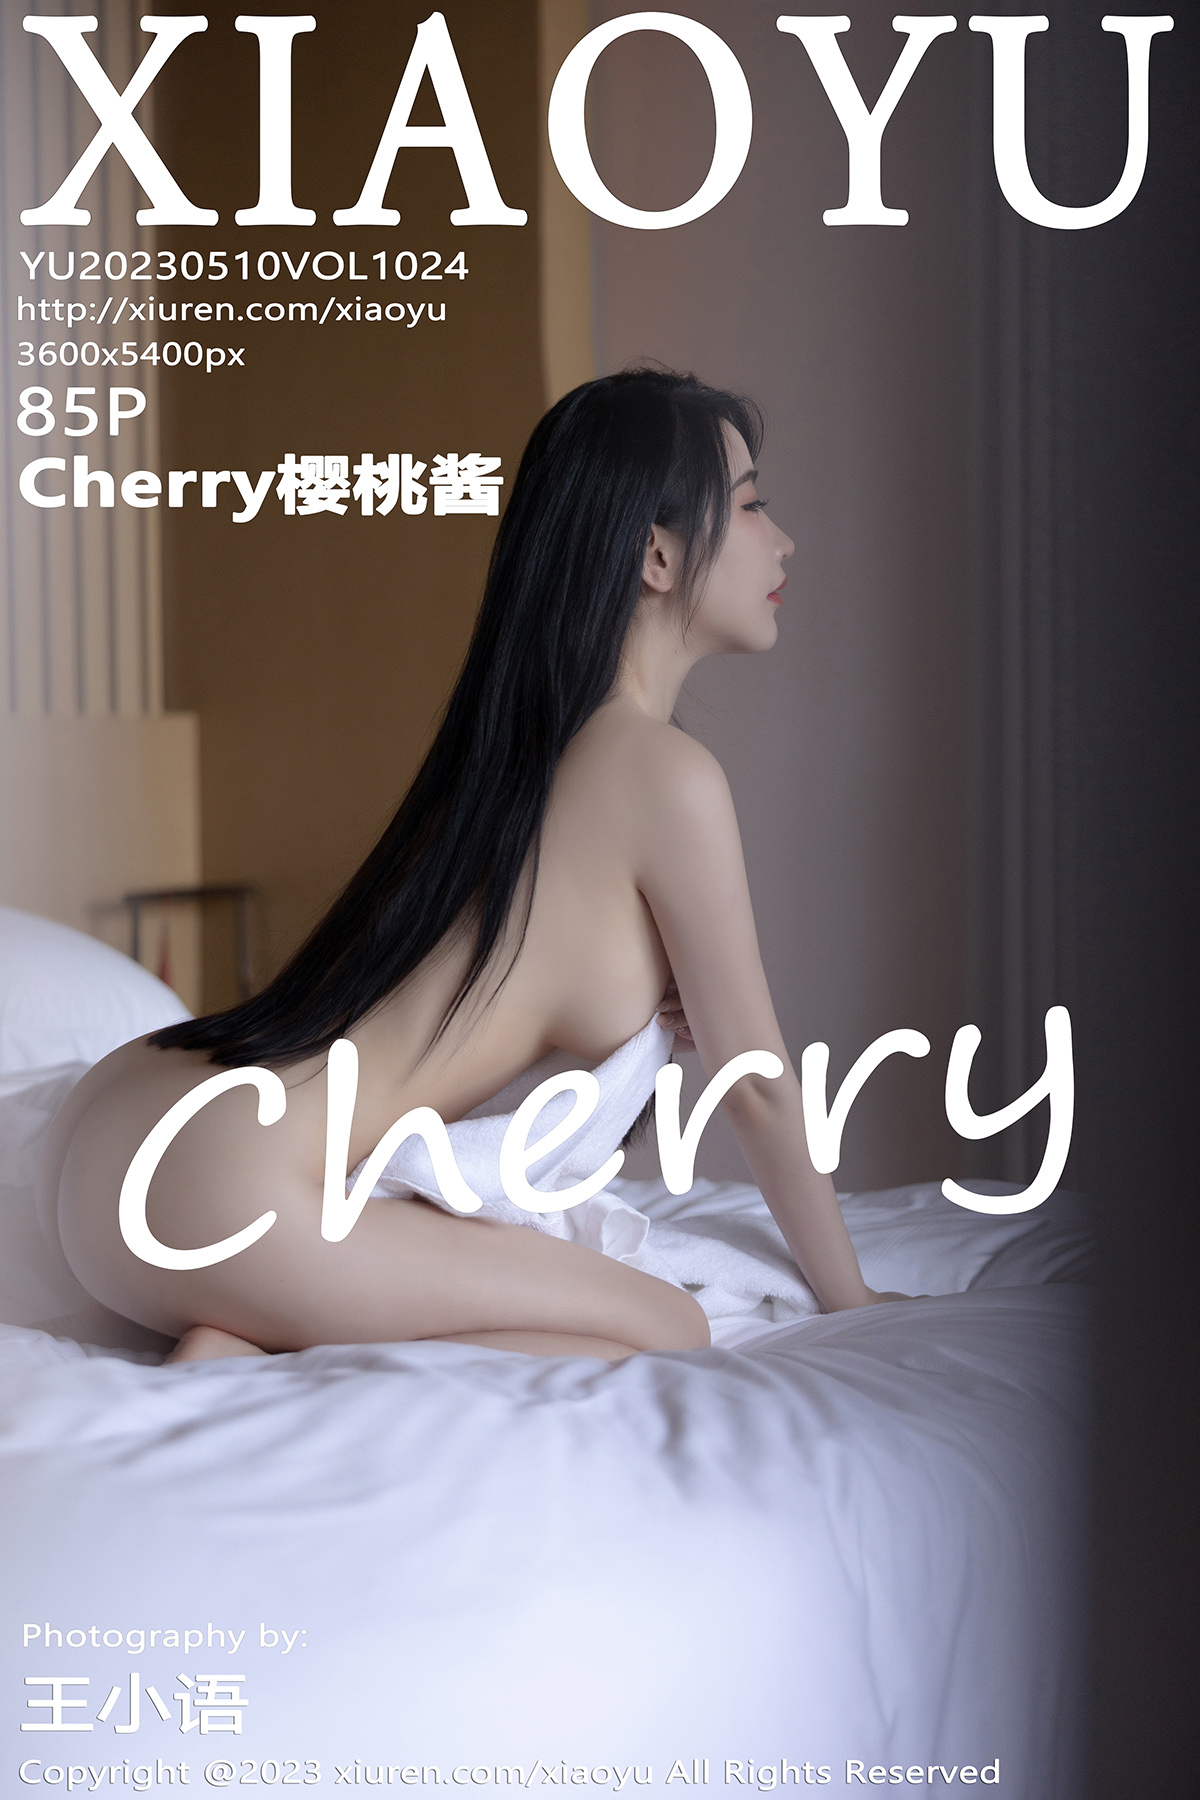 语画界 [XIAOYU] 2023.05.10 VOL.1024 Cherry樱桃酱